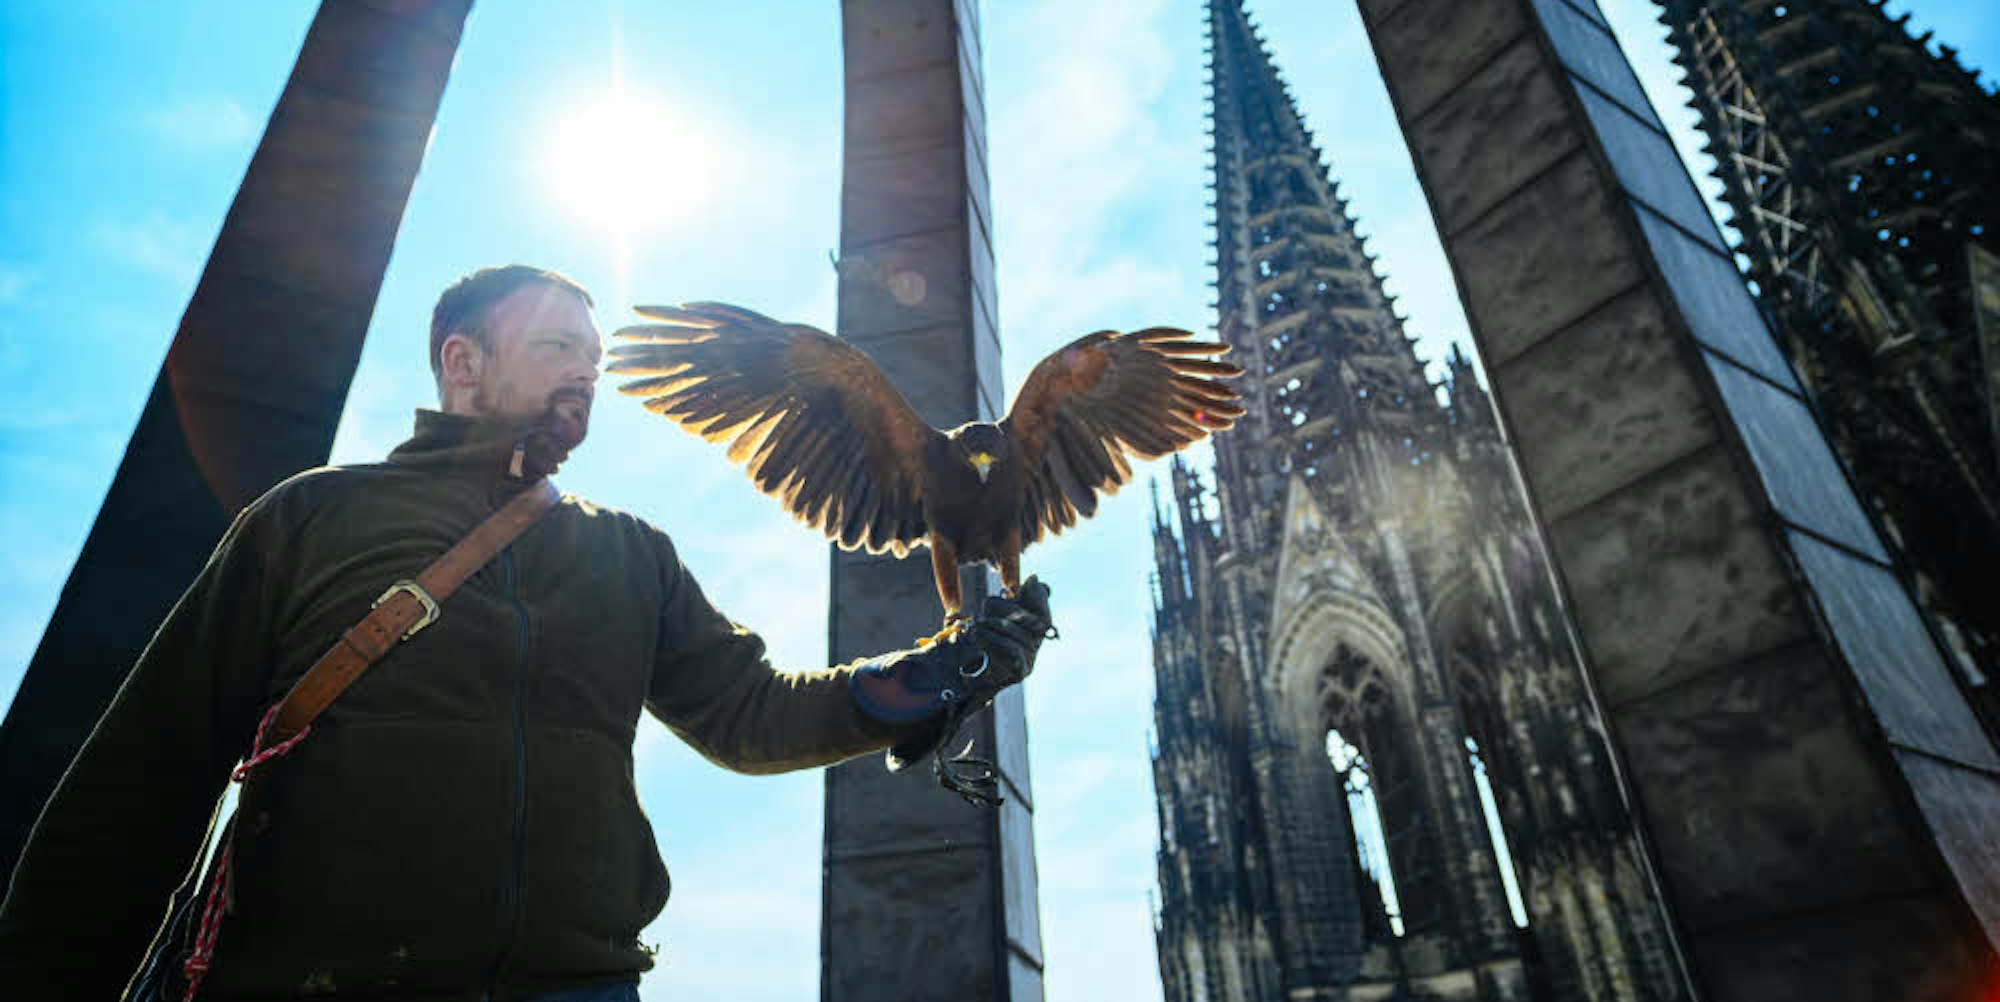 Mit seinen Greifvögeln ist Marco Wahl auch am Kölner Dom im Einsatz, um die Tauben zu verjagen.